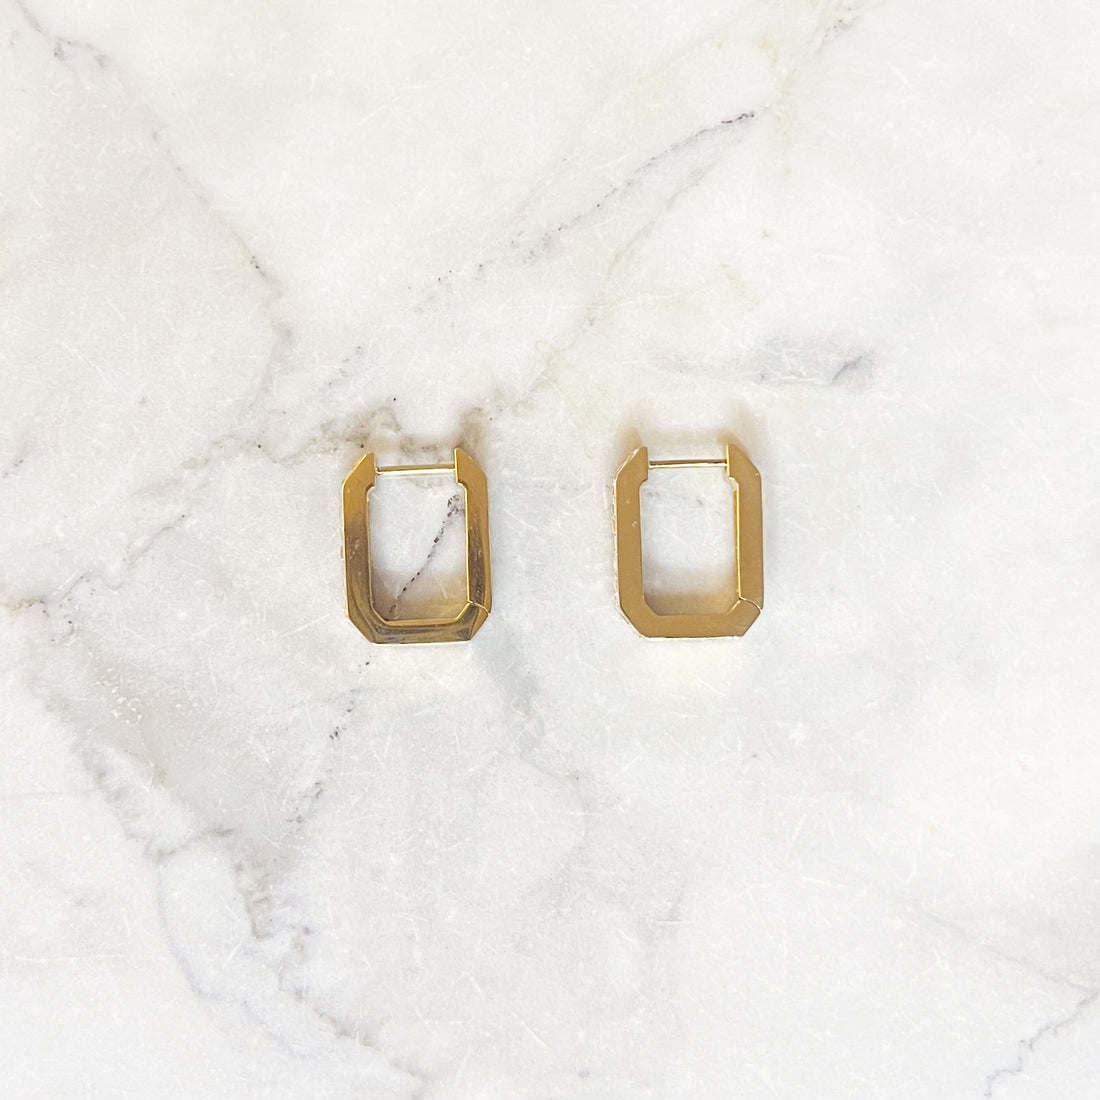 Gouden oorbellen in met gekartelde hoeken ingelegd met zirconia steentjes. De oorbellen zijn van gold plated stainless steel materiaal en zijn waterproof. Cubic zircon earrings gold. 